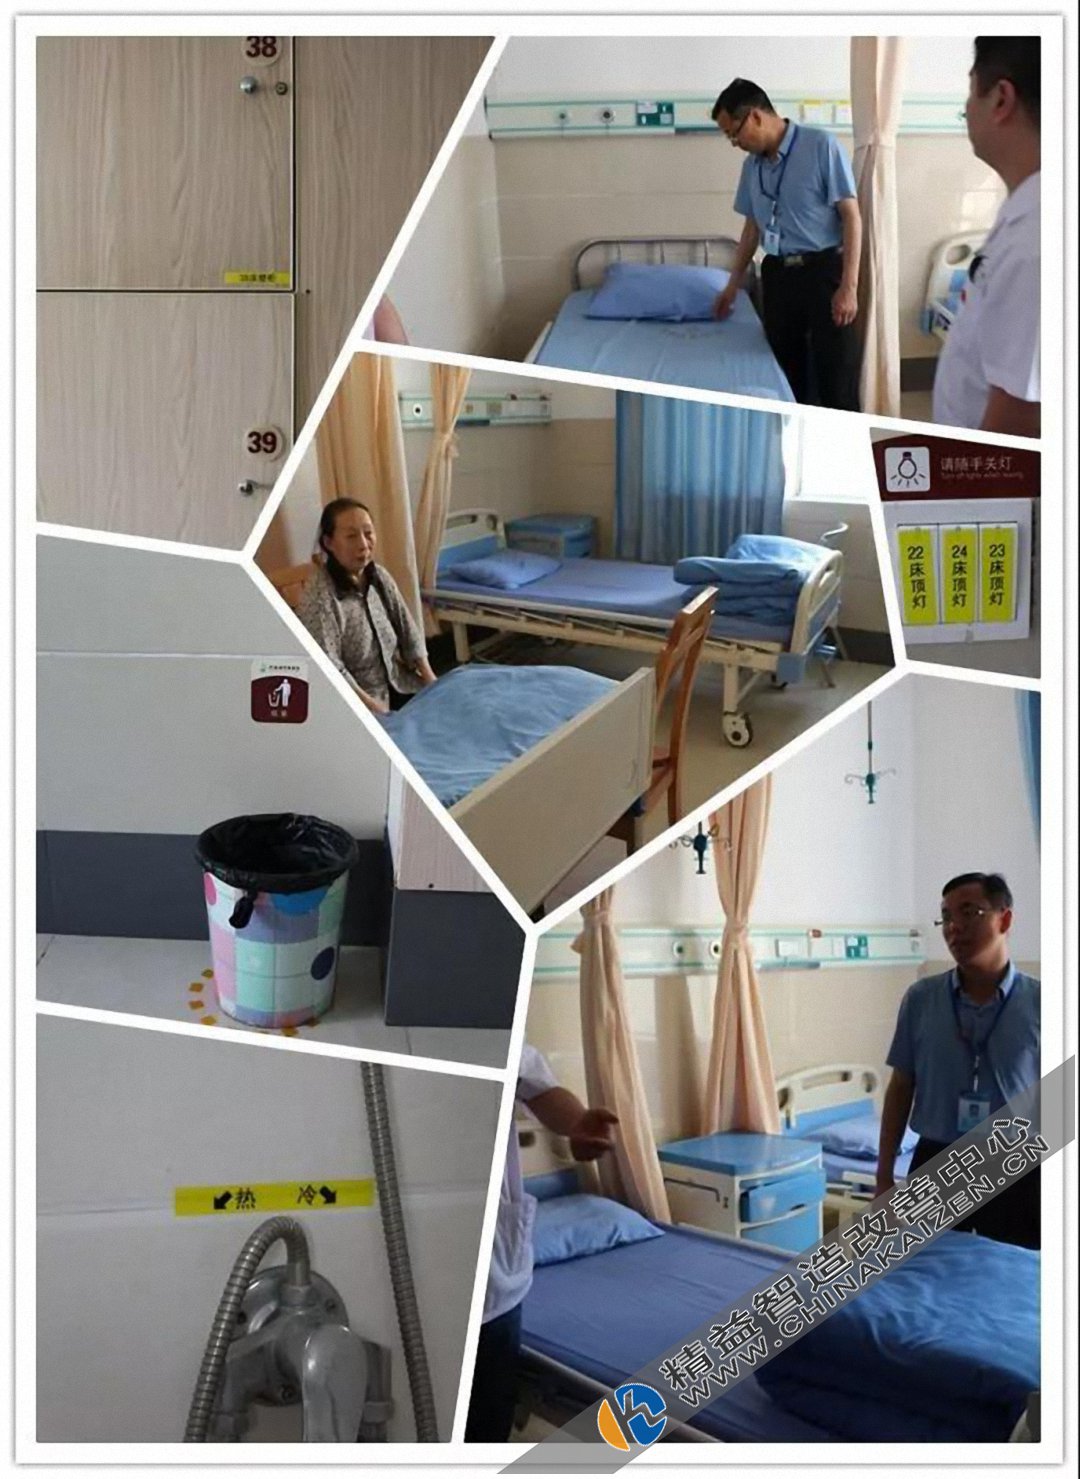 竹溪县中医院6S精益管理第三批样板科室成功验收 优秀案例分享